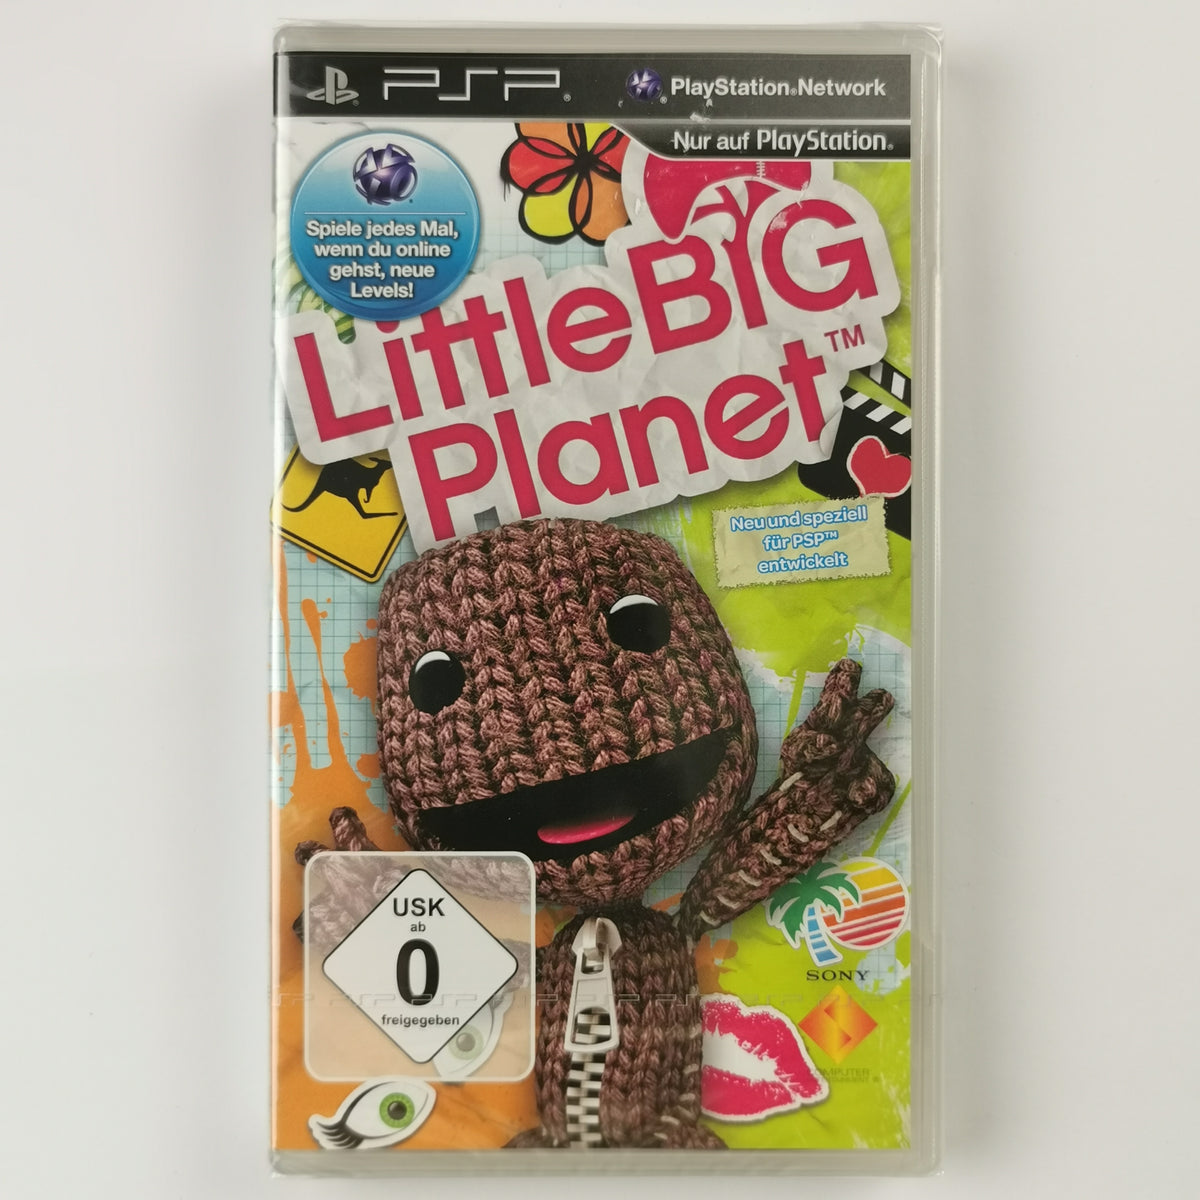 Little Big Planet Playstation [PSP]